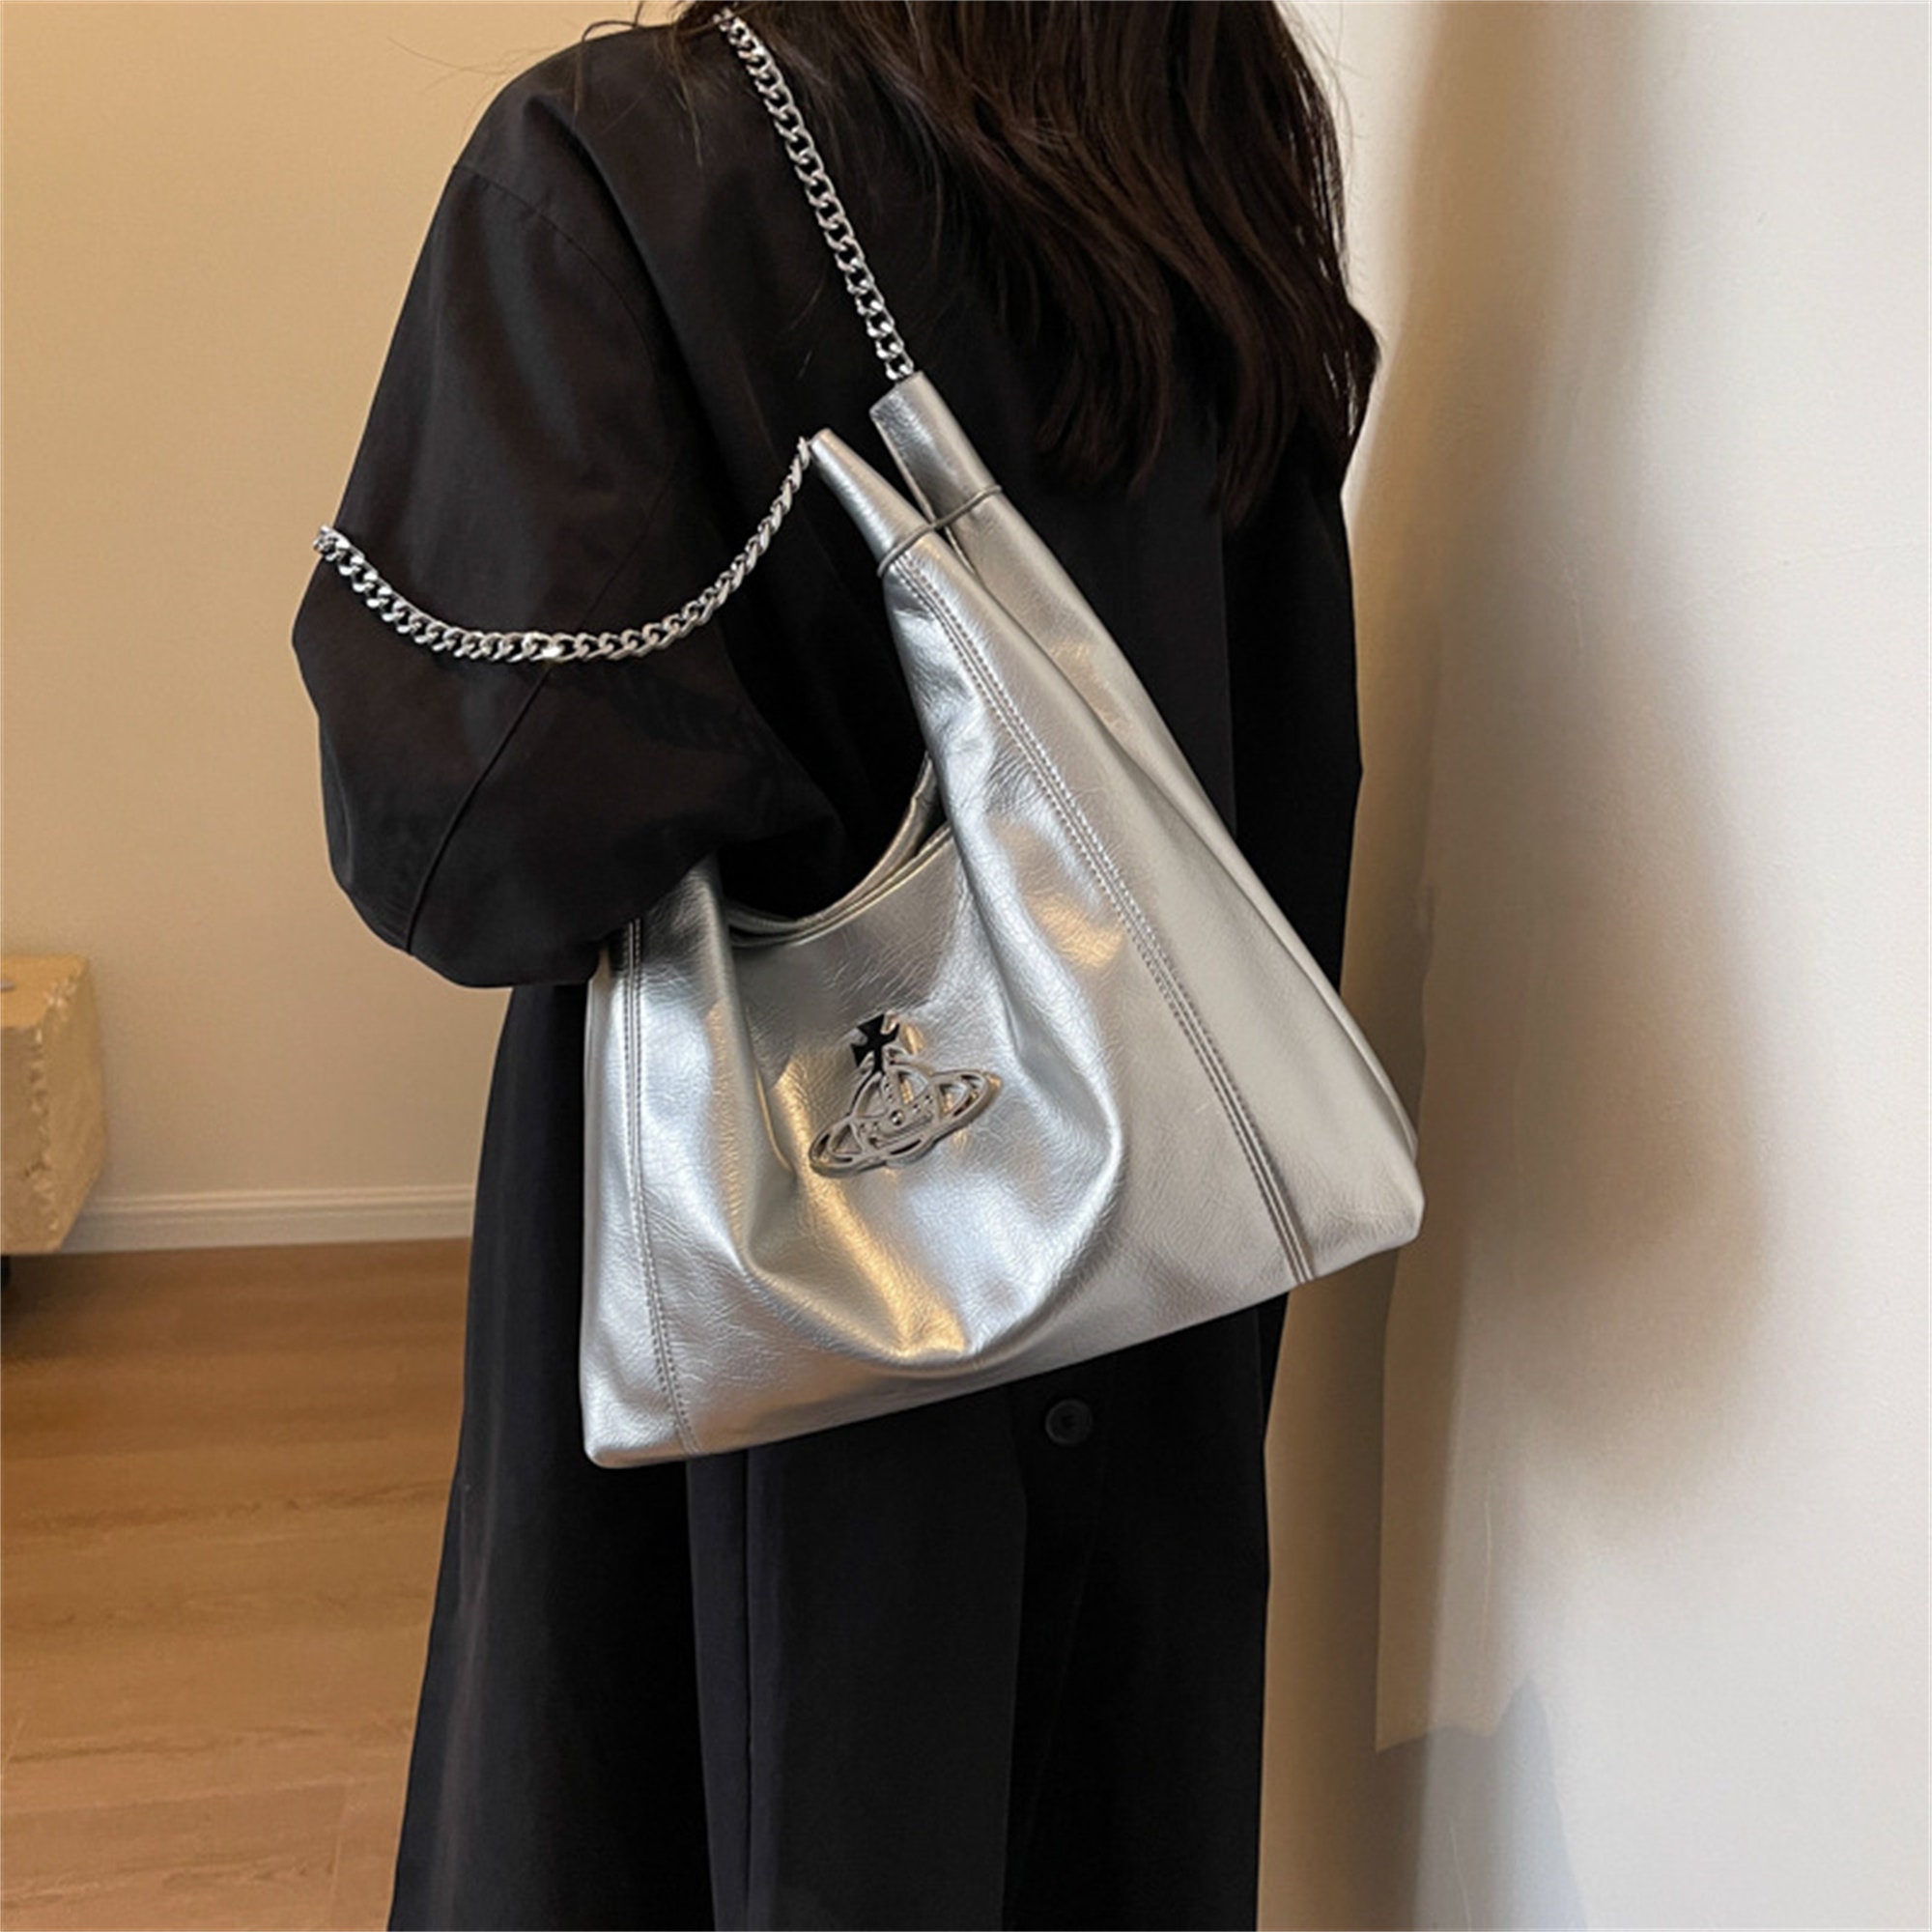 PRADA, vintage bag, Gallery posted by โลริณ